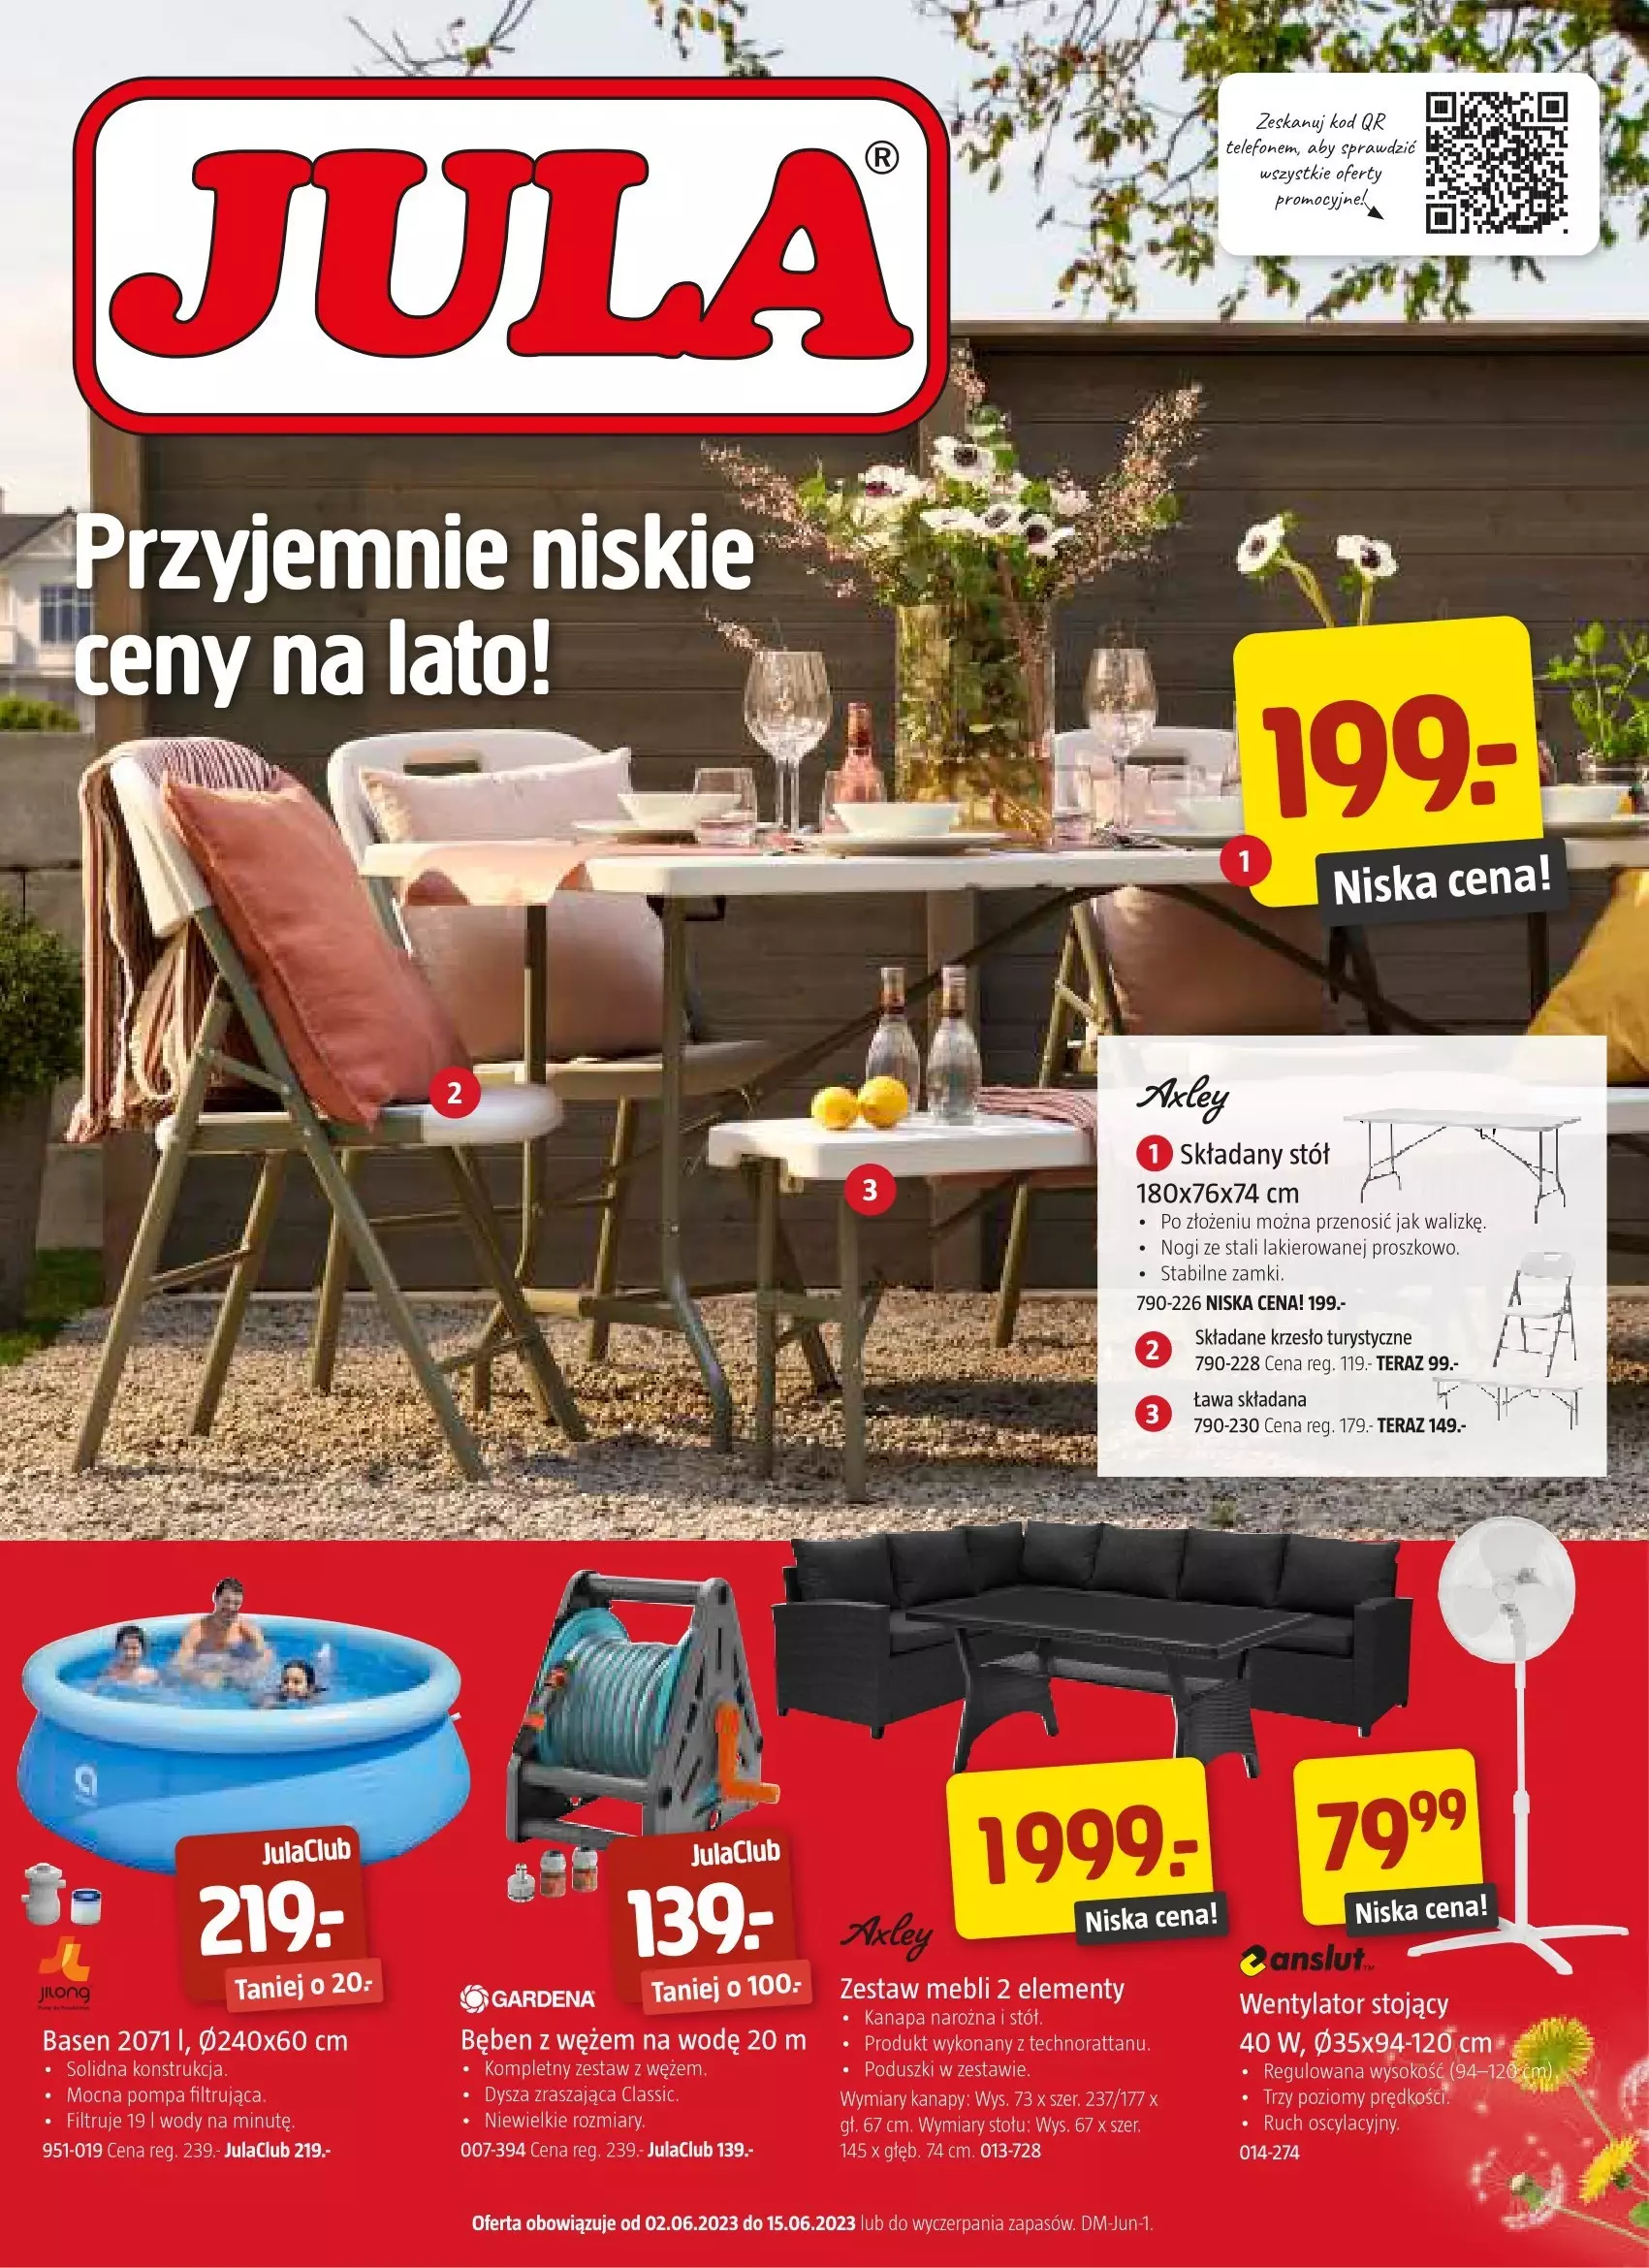 Jula - gazetka promocyjna Gazetka od środy 07.06 do czwartku 15.06